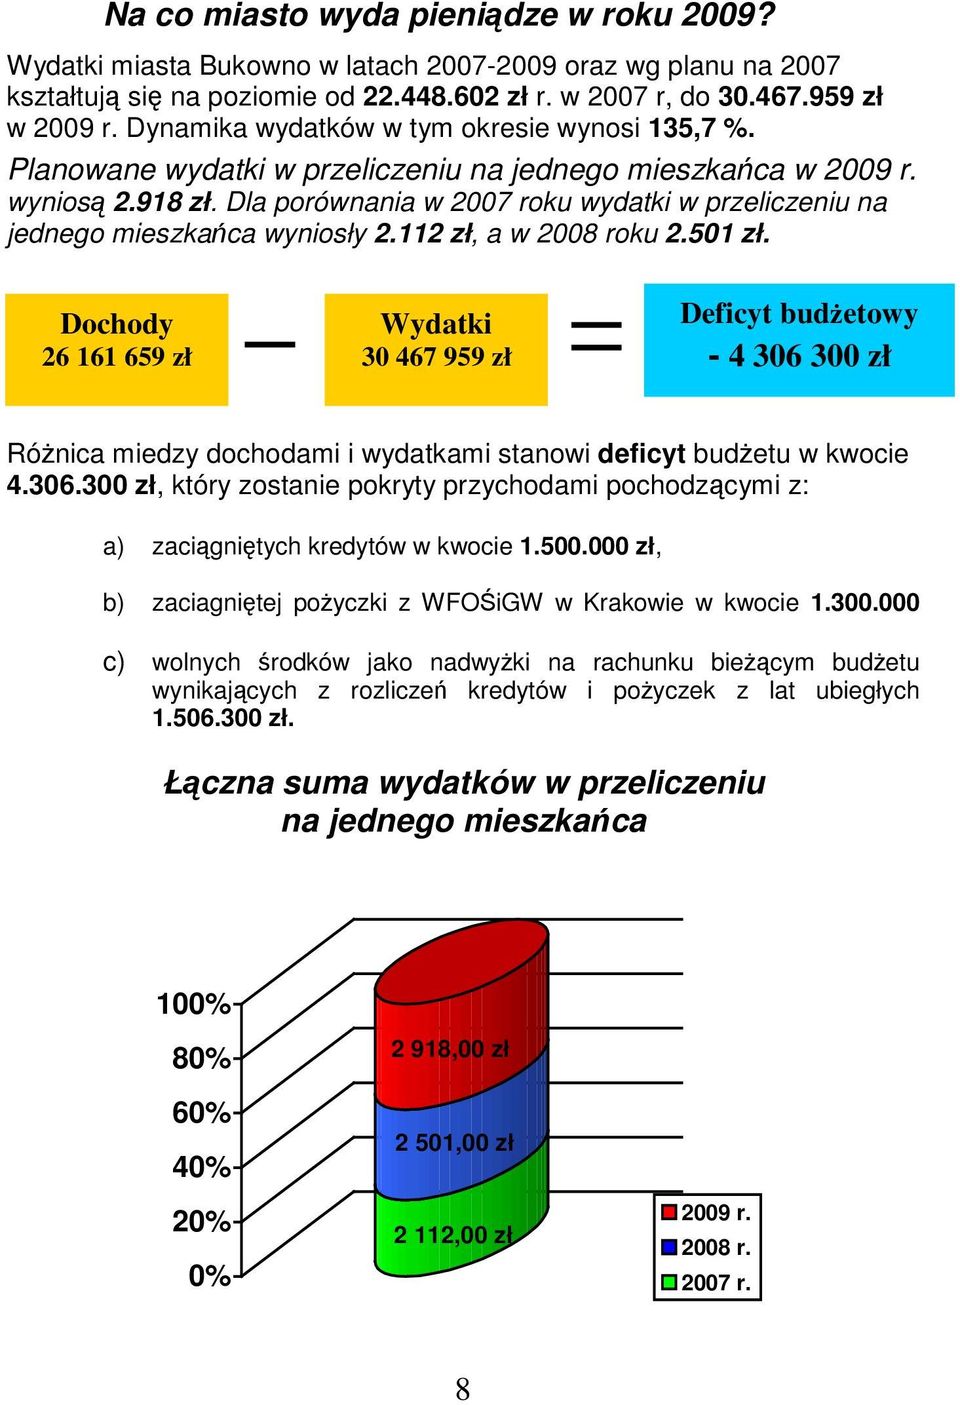 Dla porównania roku wydatki w przeliczeniu na jednego mieszkaca wyniosły 2.112 zł, a roku 2.501 zł.